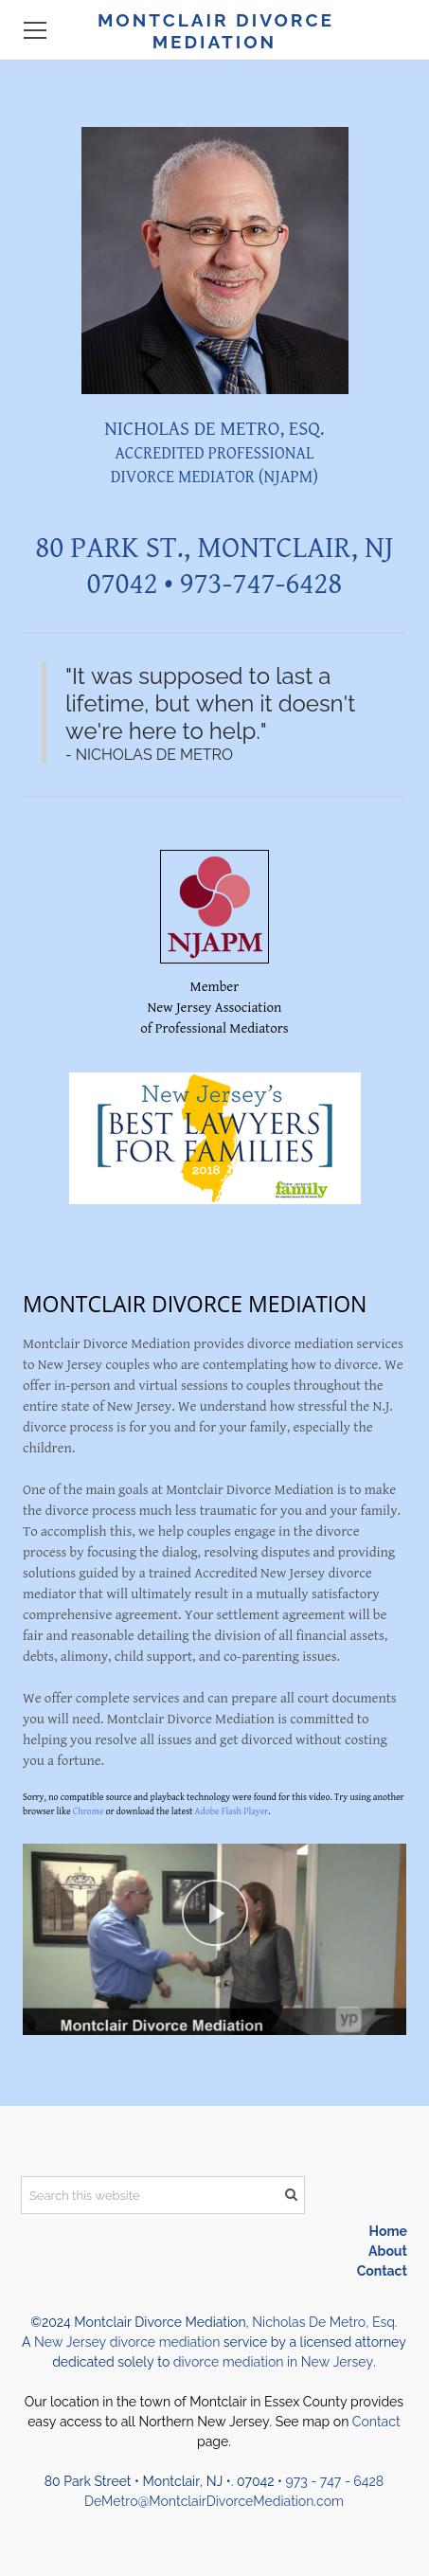 Montclair Divorce Mediation - Montclair NJ Lawyers